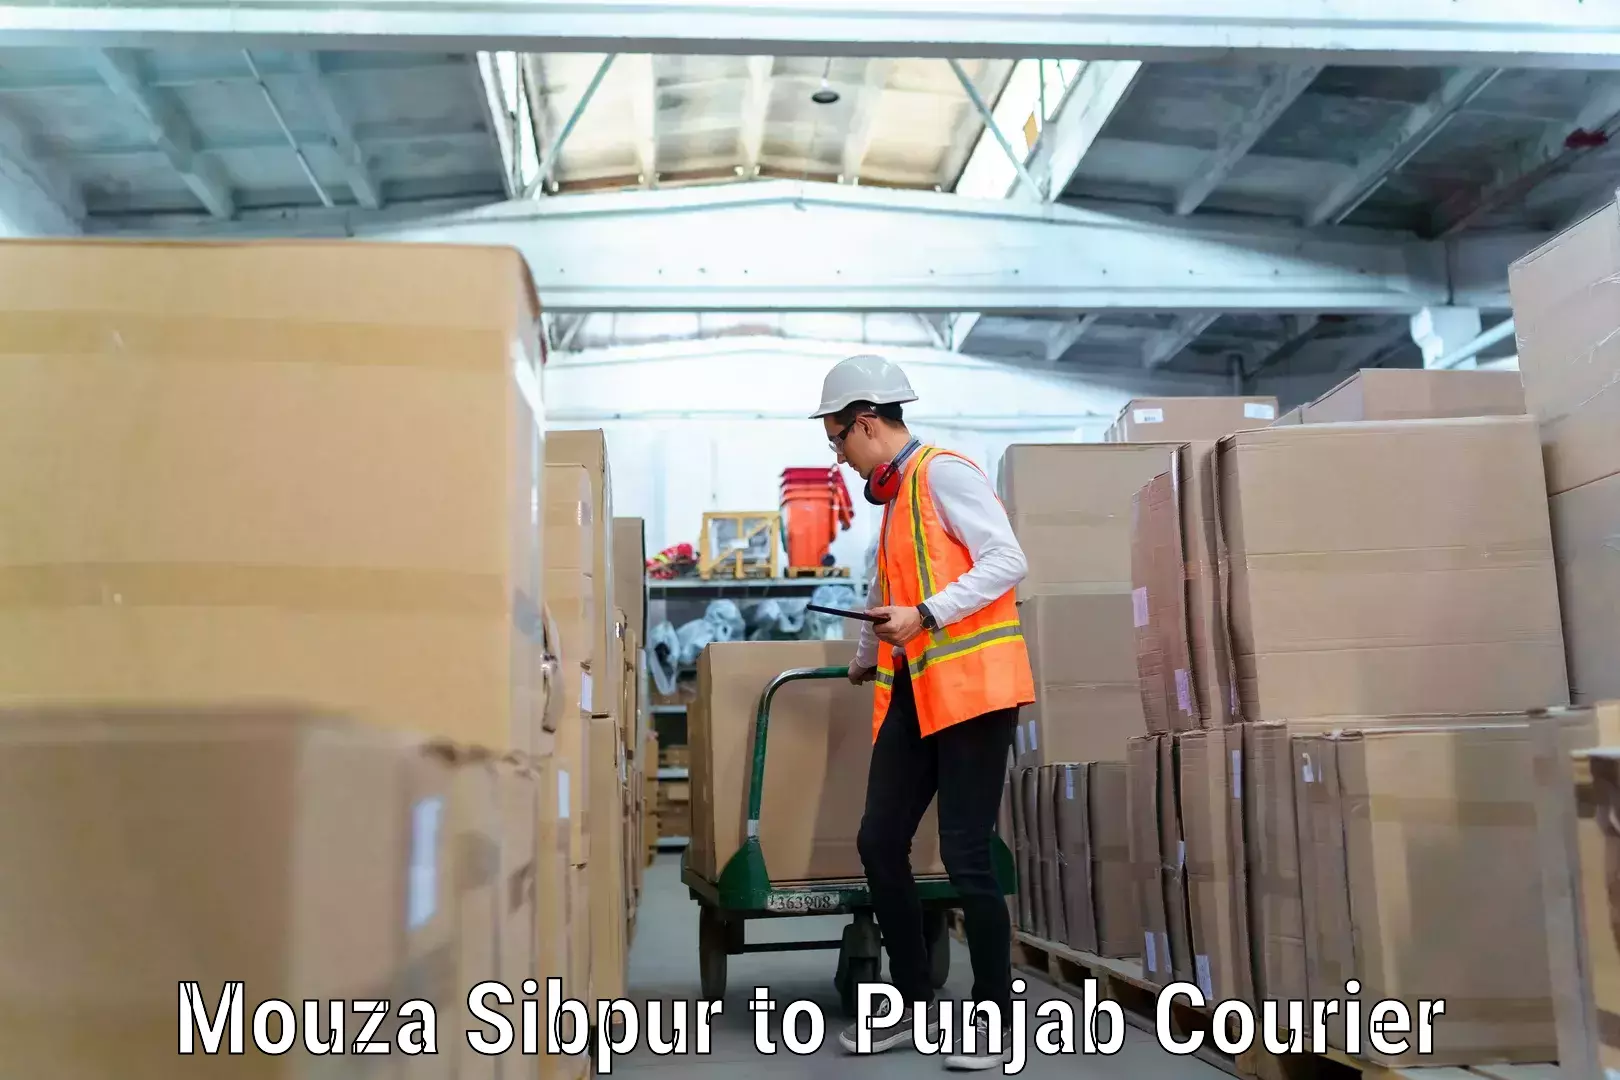 Expert goods movers Mouza Sibpur to Punjab